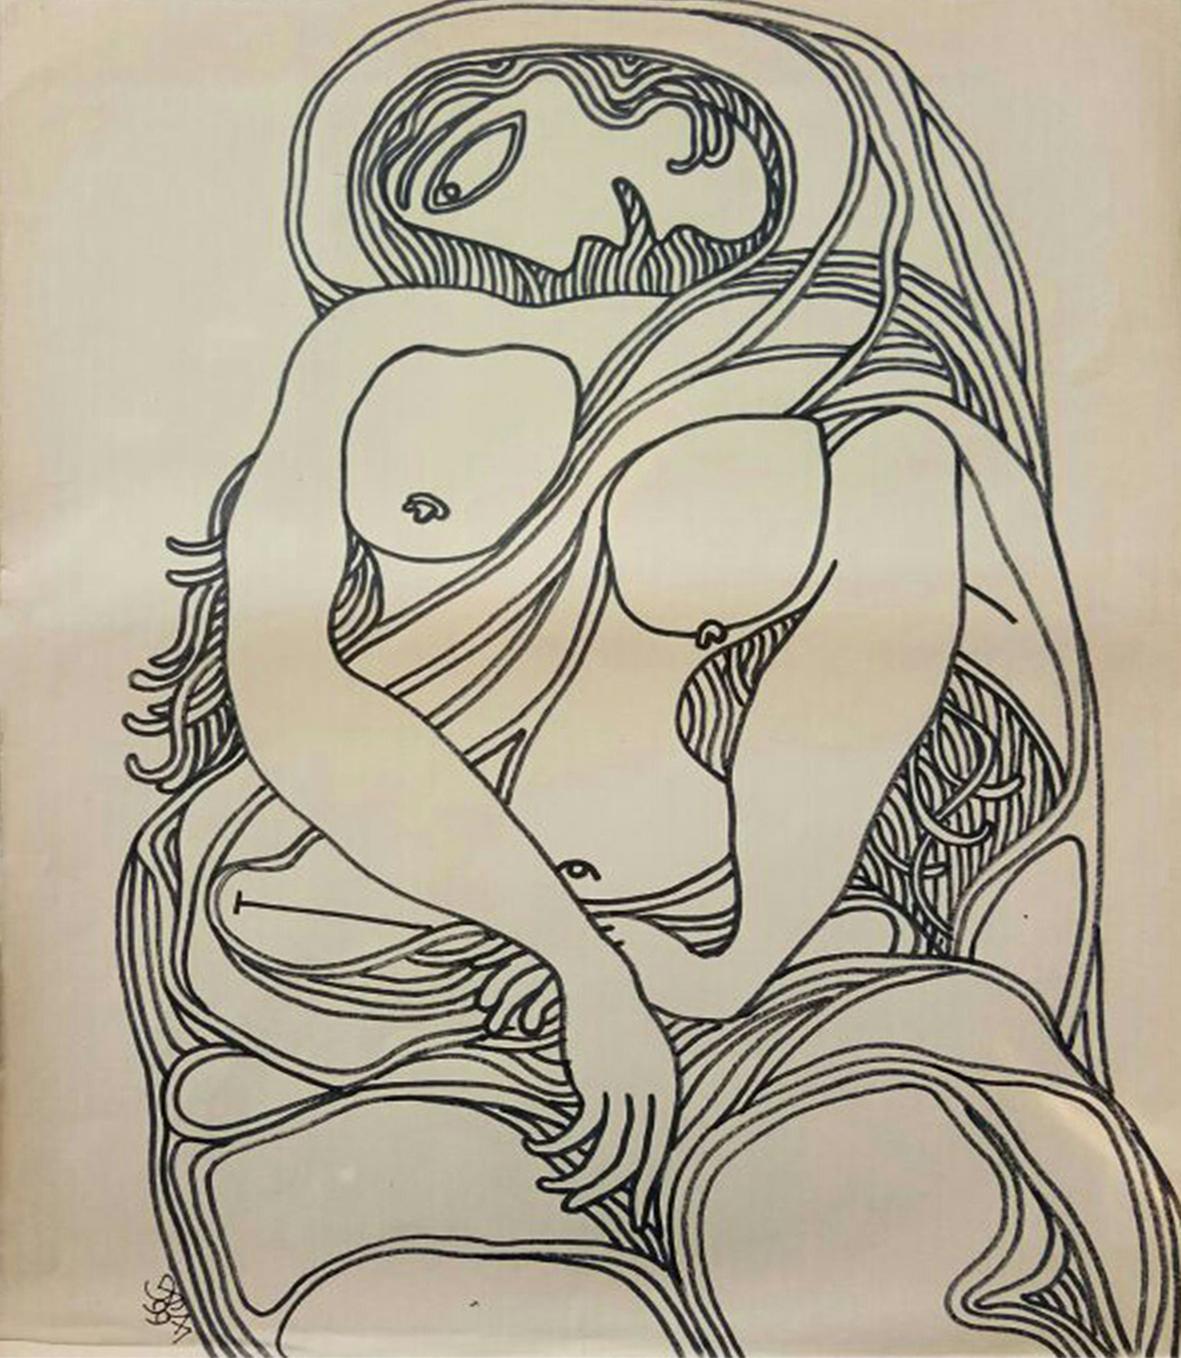 Femme nue, dessin, encre, marqueur sur papier de l'artiste indien moderne « En stock »